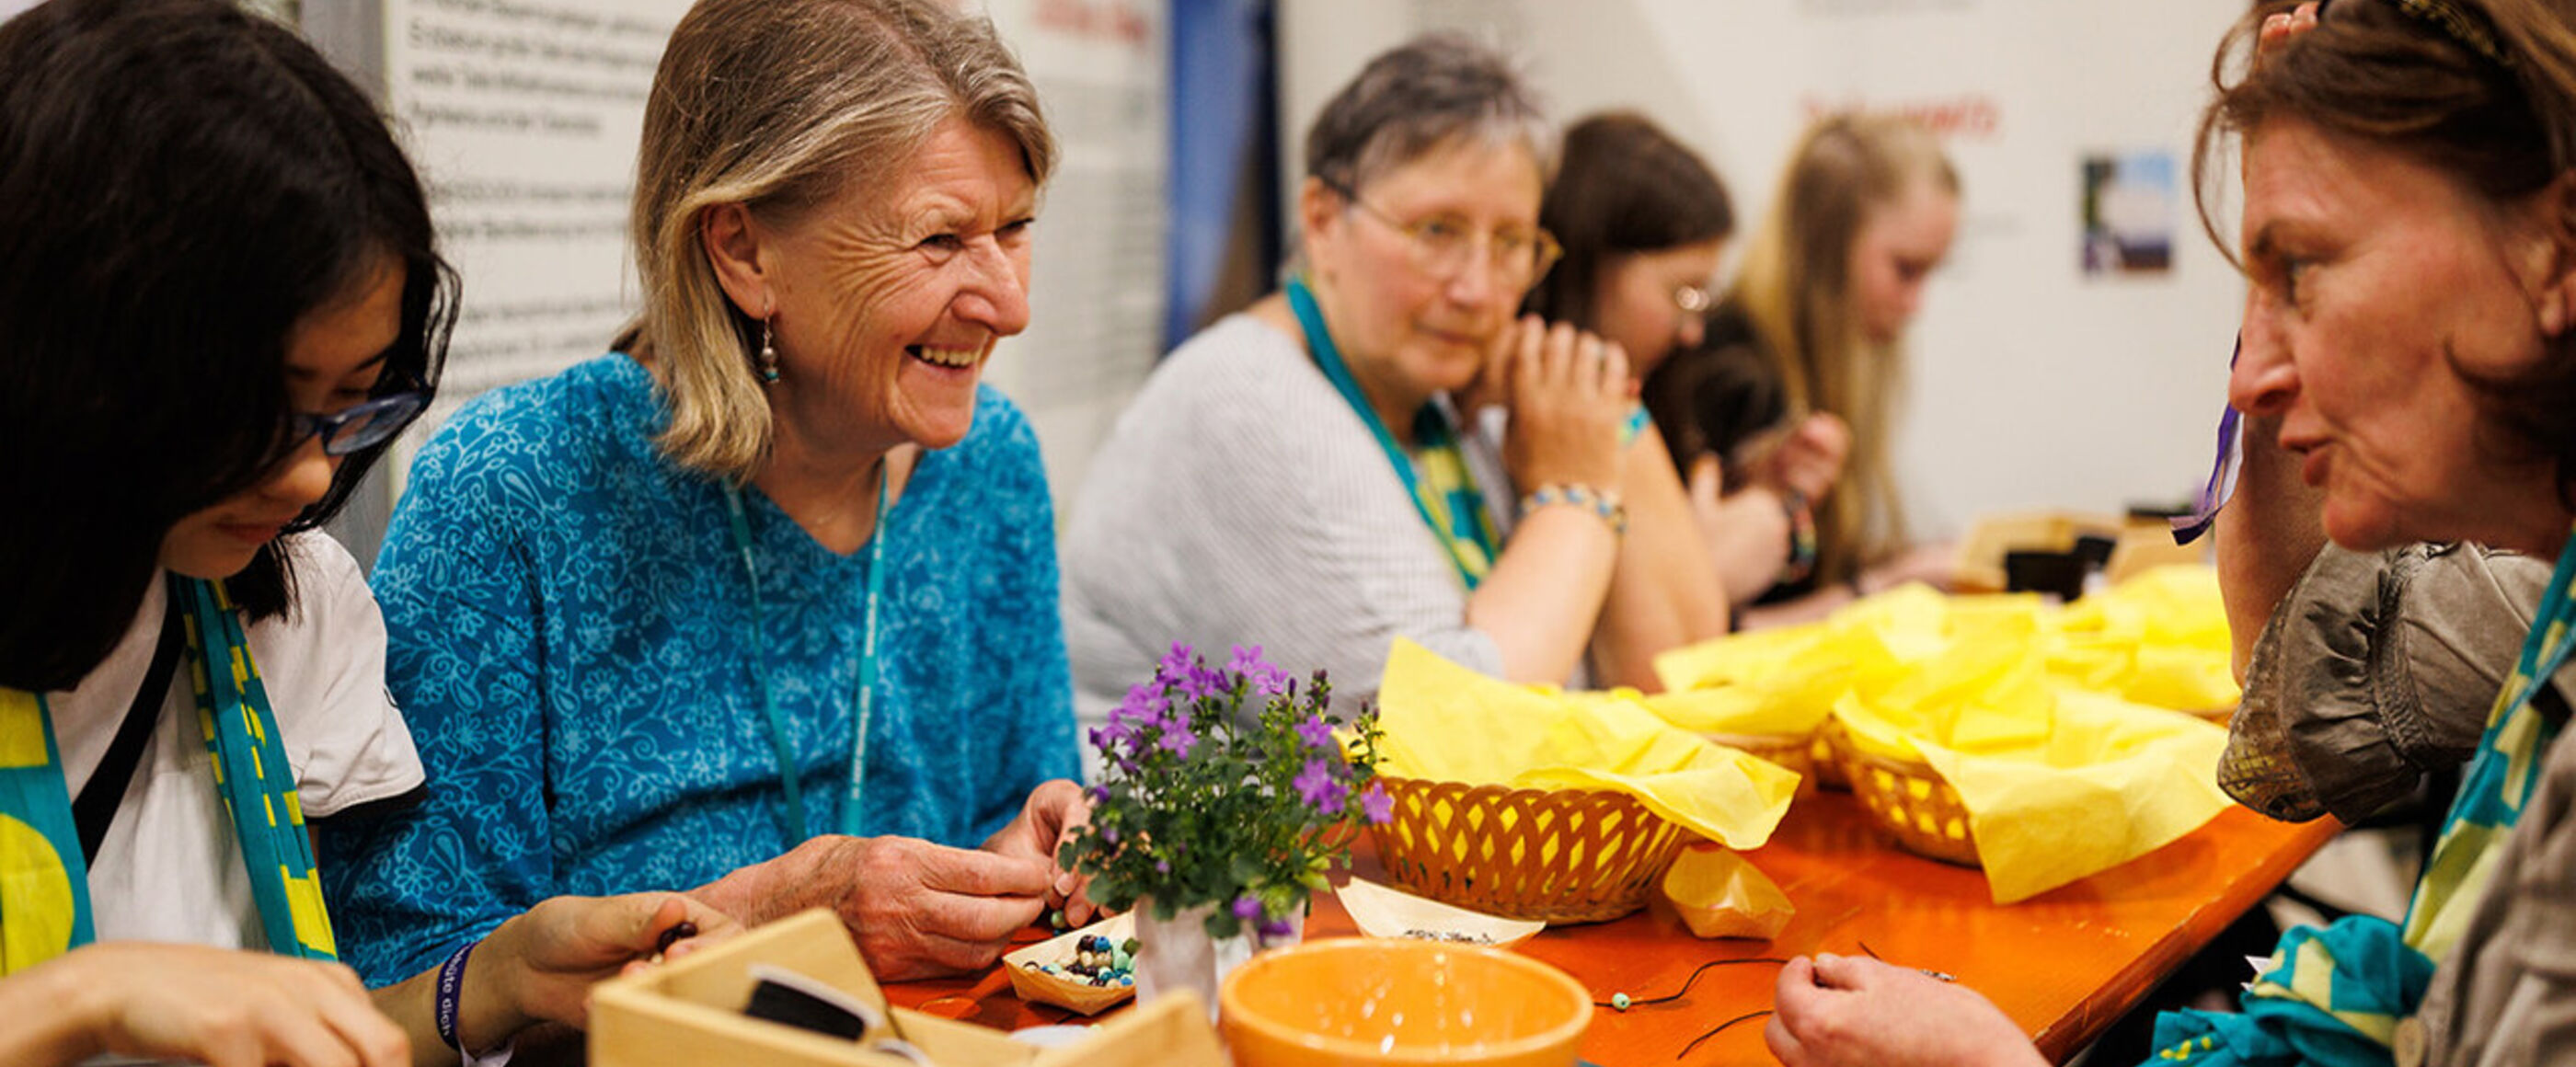 Weiblich gelesene Personen unterschiedlichen Alters sitzen an einem langen Tisch und knüpft Perlenarmbänder, sie tragen den Kirchentagsschal aus Nürnberg, manche unterhalten sich und lachen